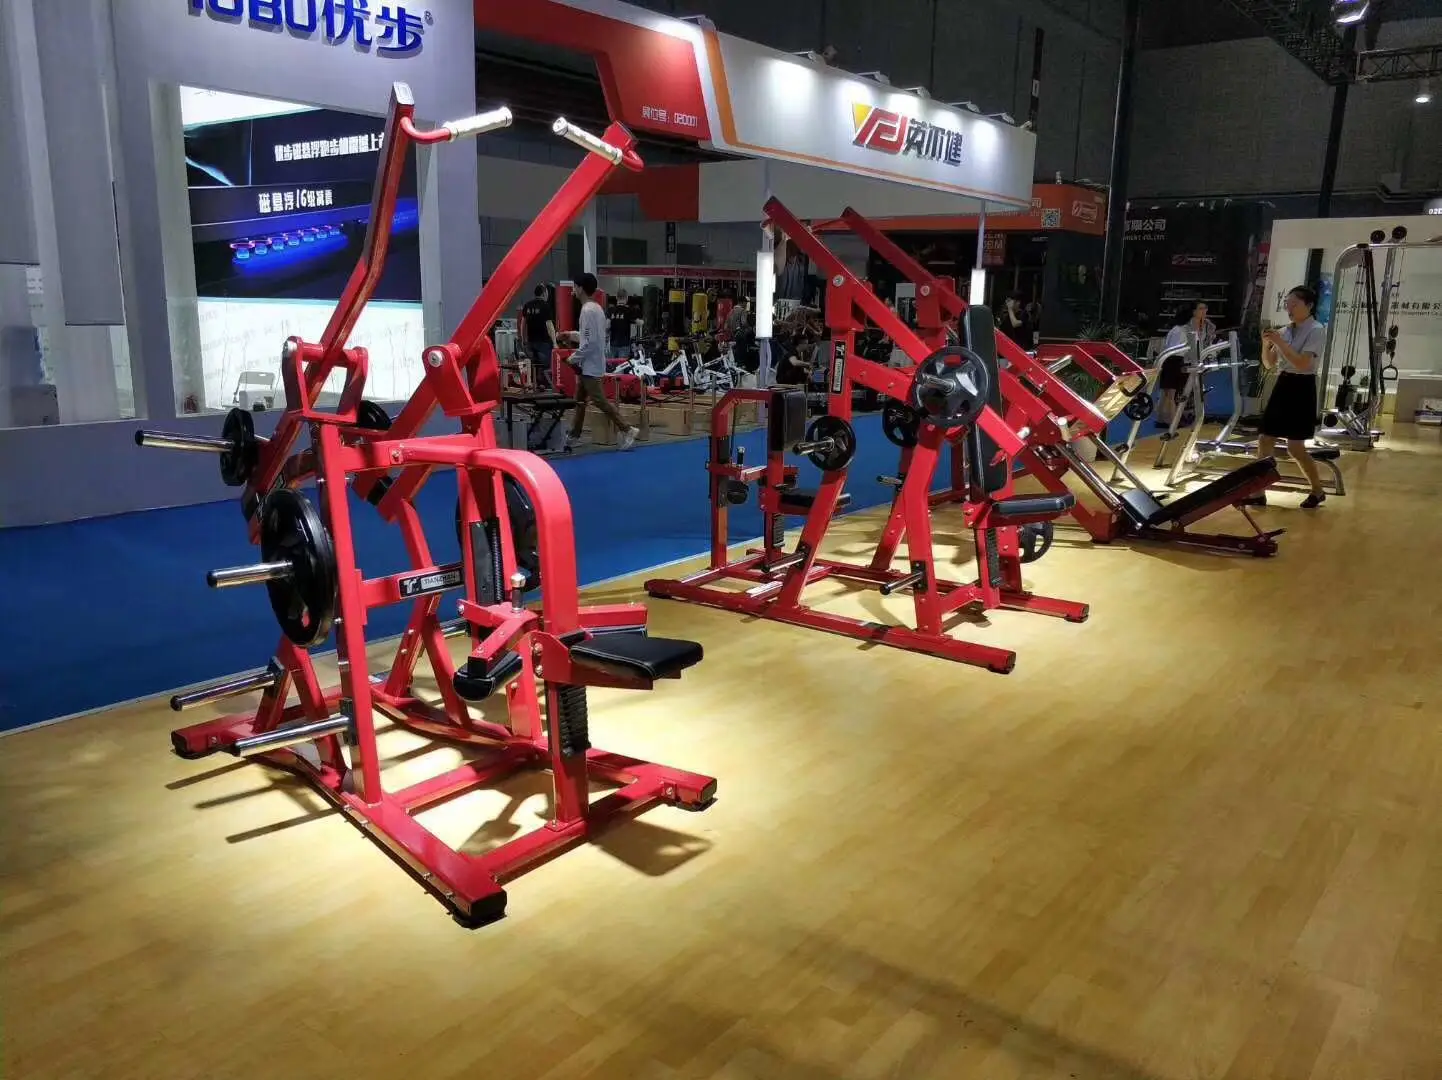  Gym equipment bur dubai for ABS